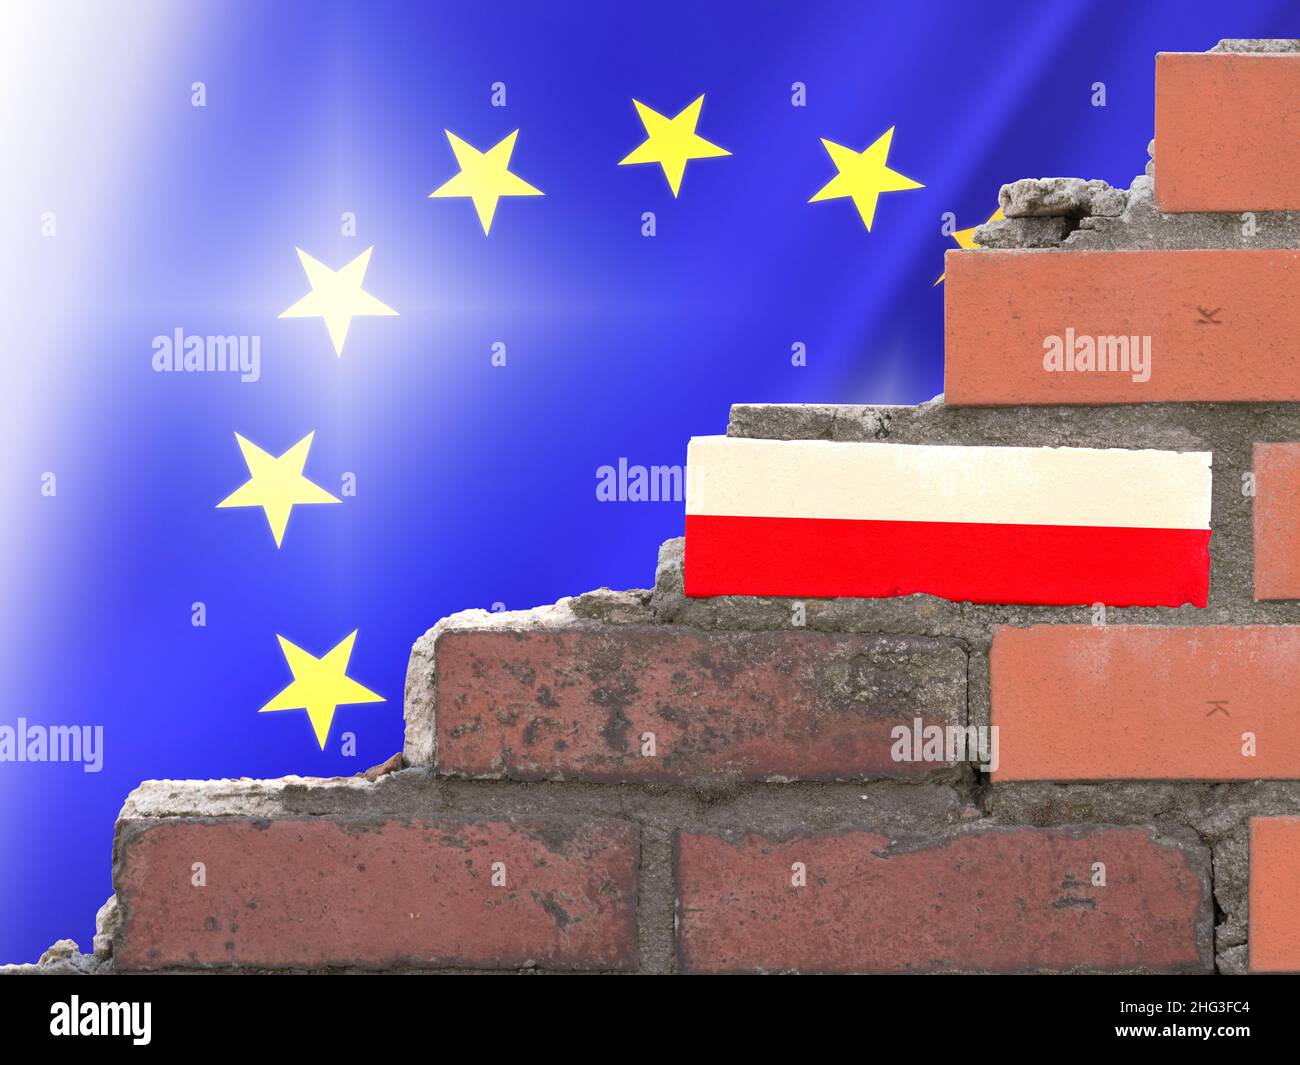 Poland and the European Union Stock Photo